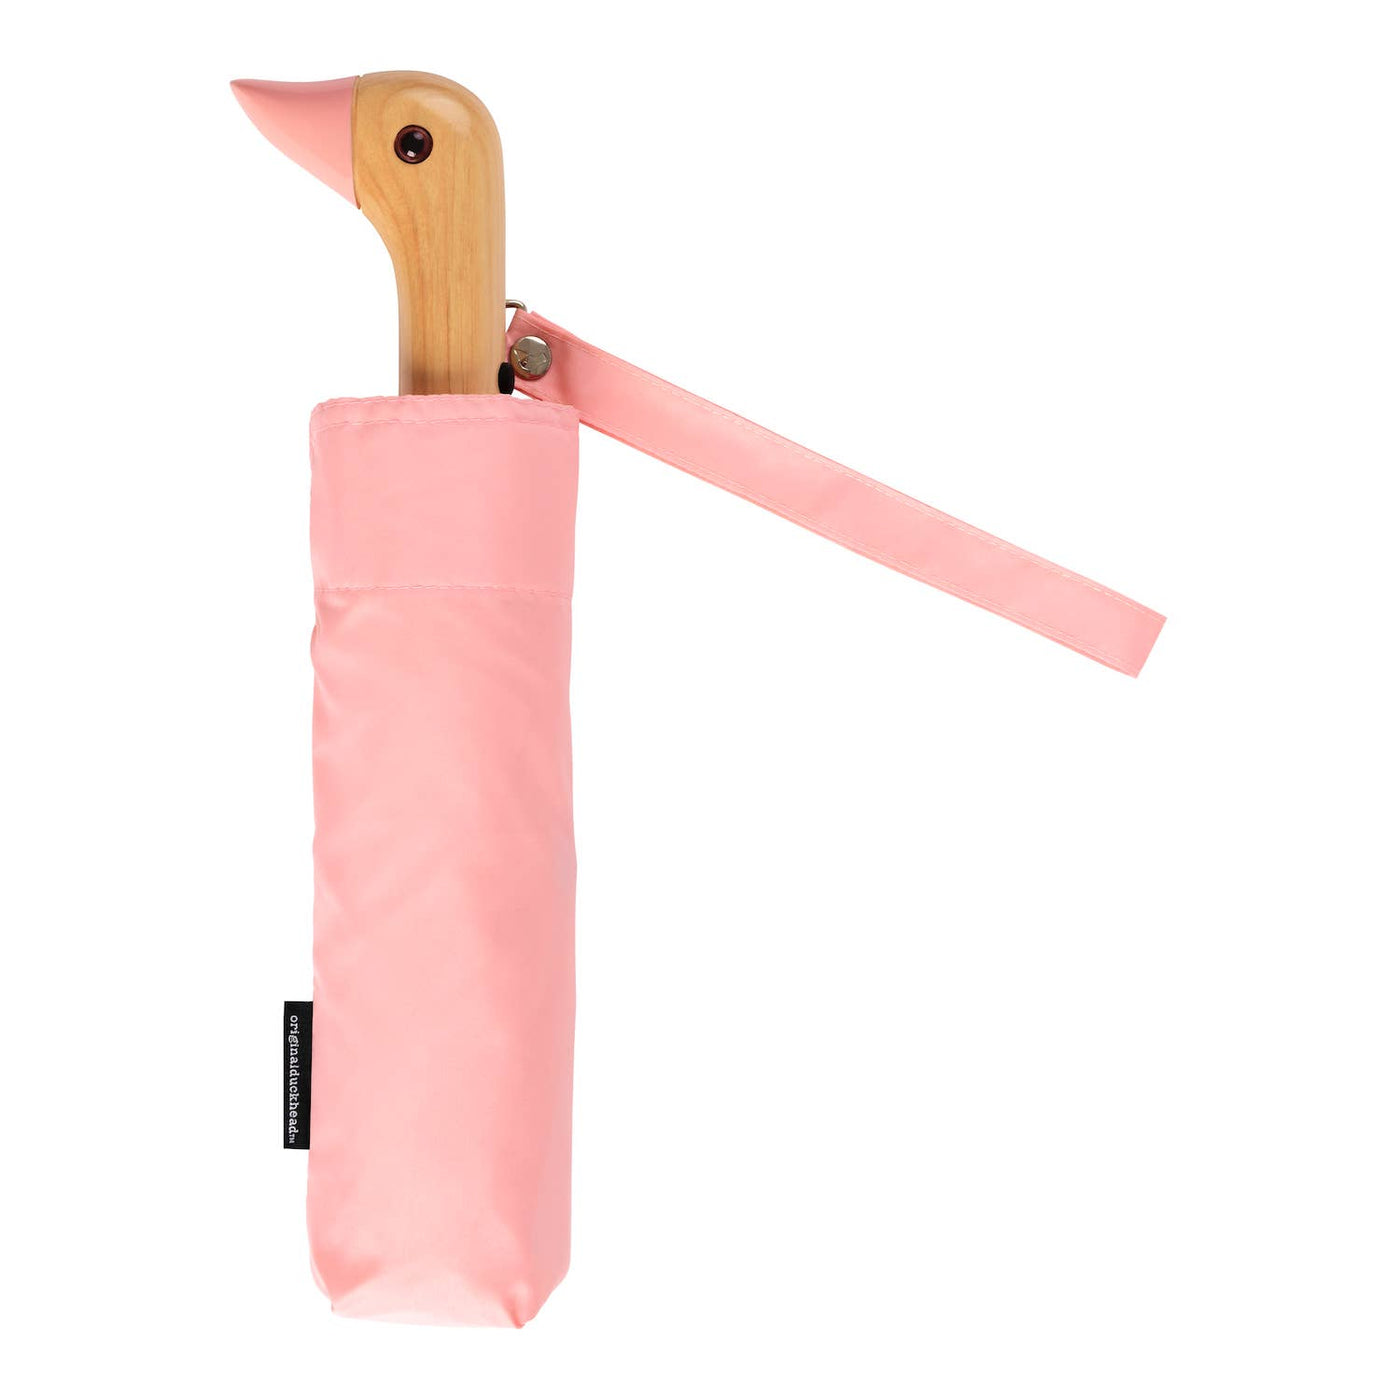 Original Duckhead - Pink Compact Eco-Friendly Wind Resistant Umbrella